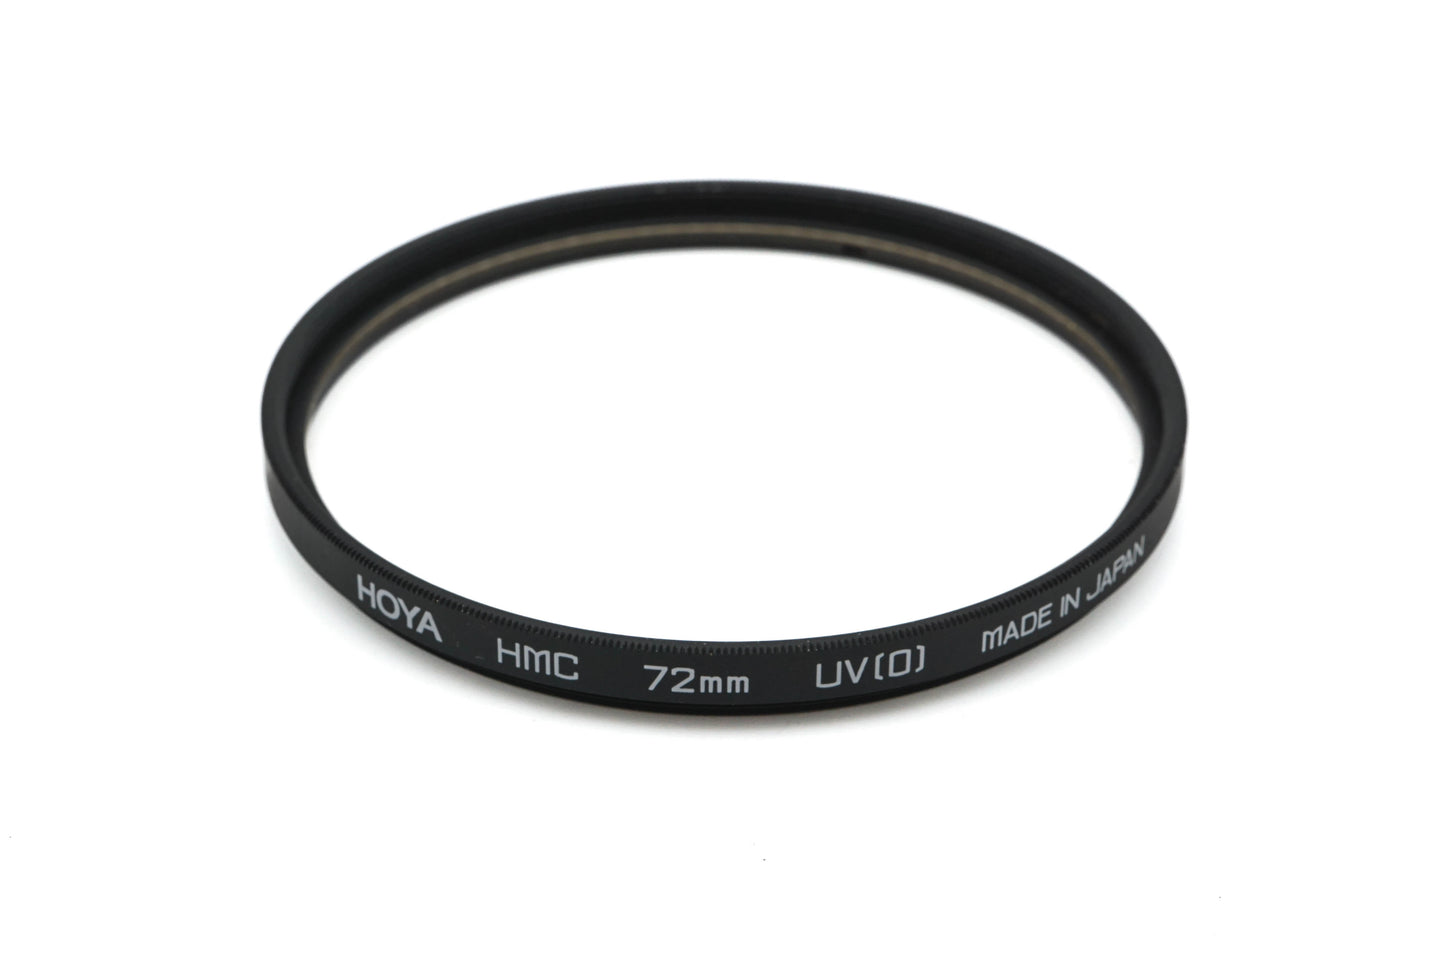 Hoya 72mm UV(O) Filter HMC - Accessory